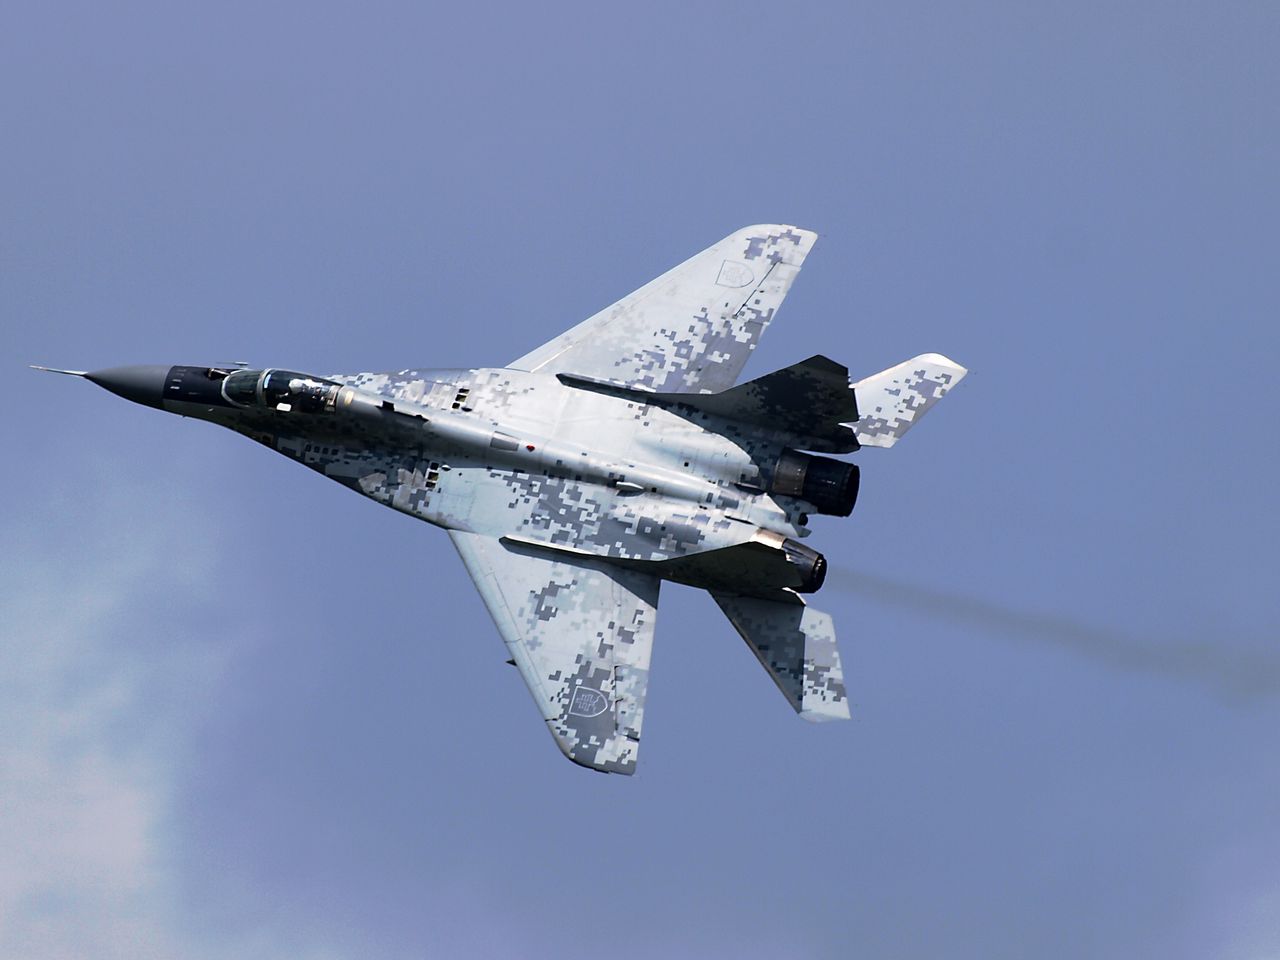 Samolot MiG-29 bez oznaczeń przy granicy. To polska pomoc dla Ukrainy?